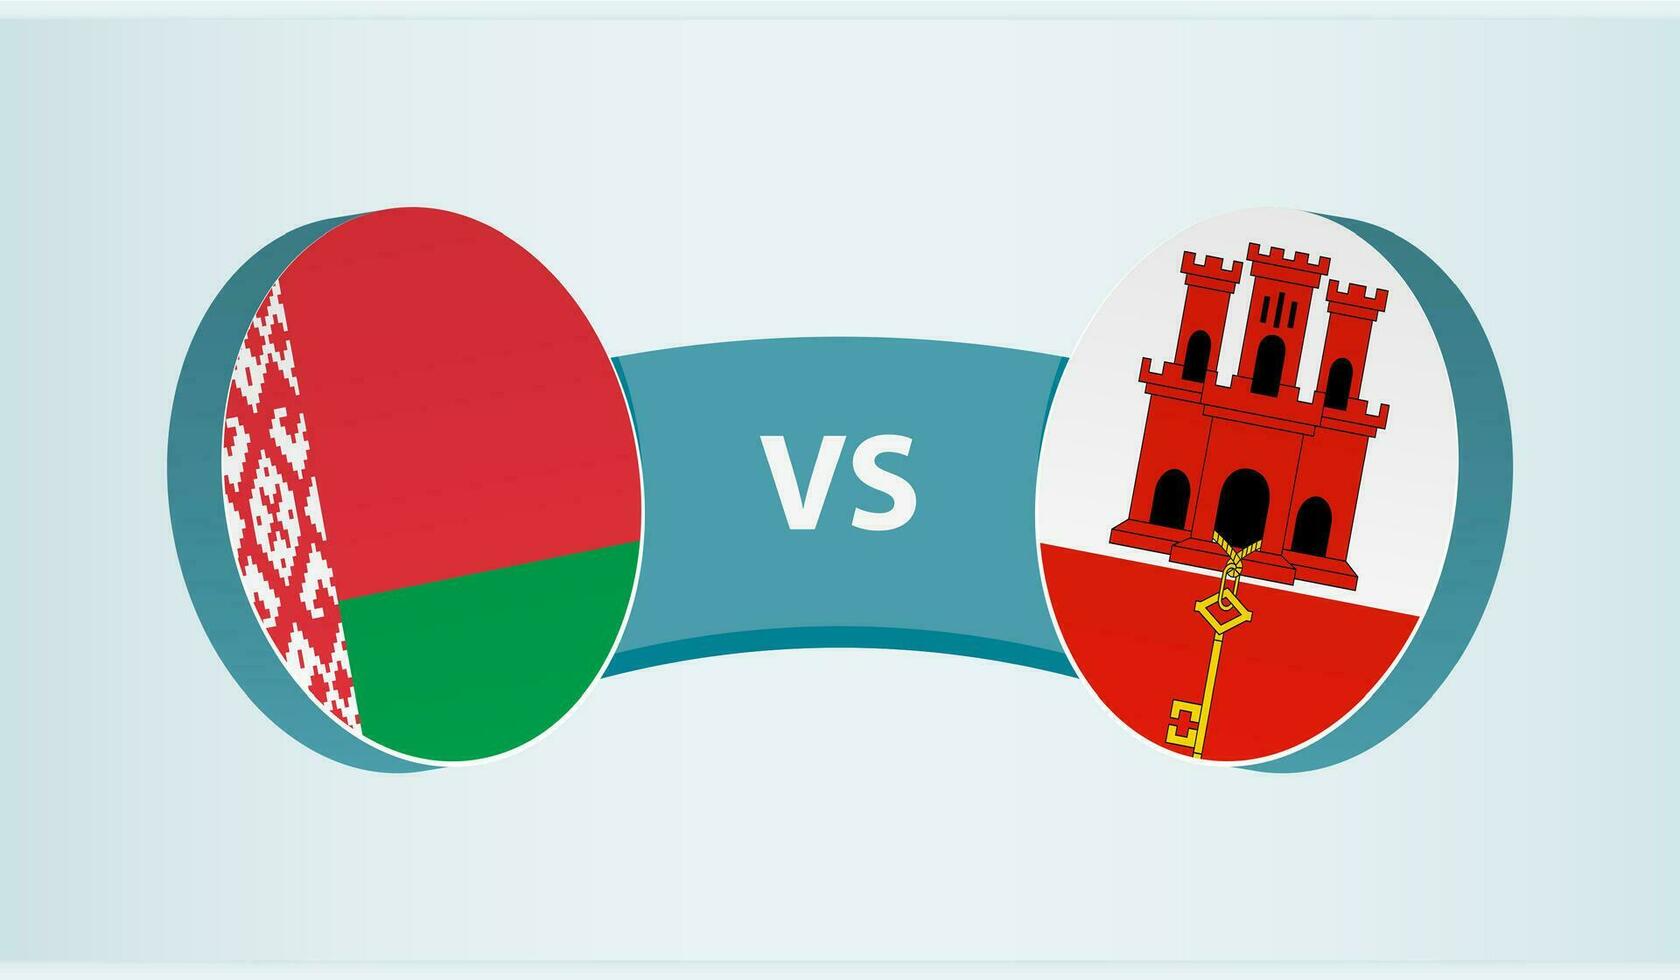 Vitryssland mot gibraltar, team sporter konkurrens begrepp. vektor